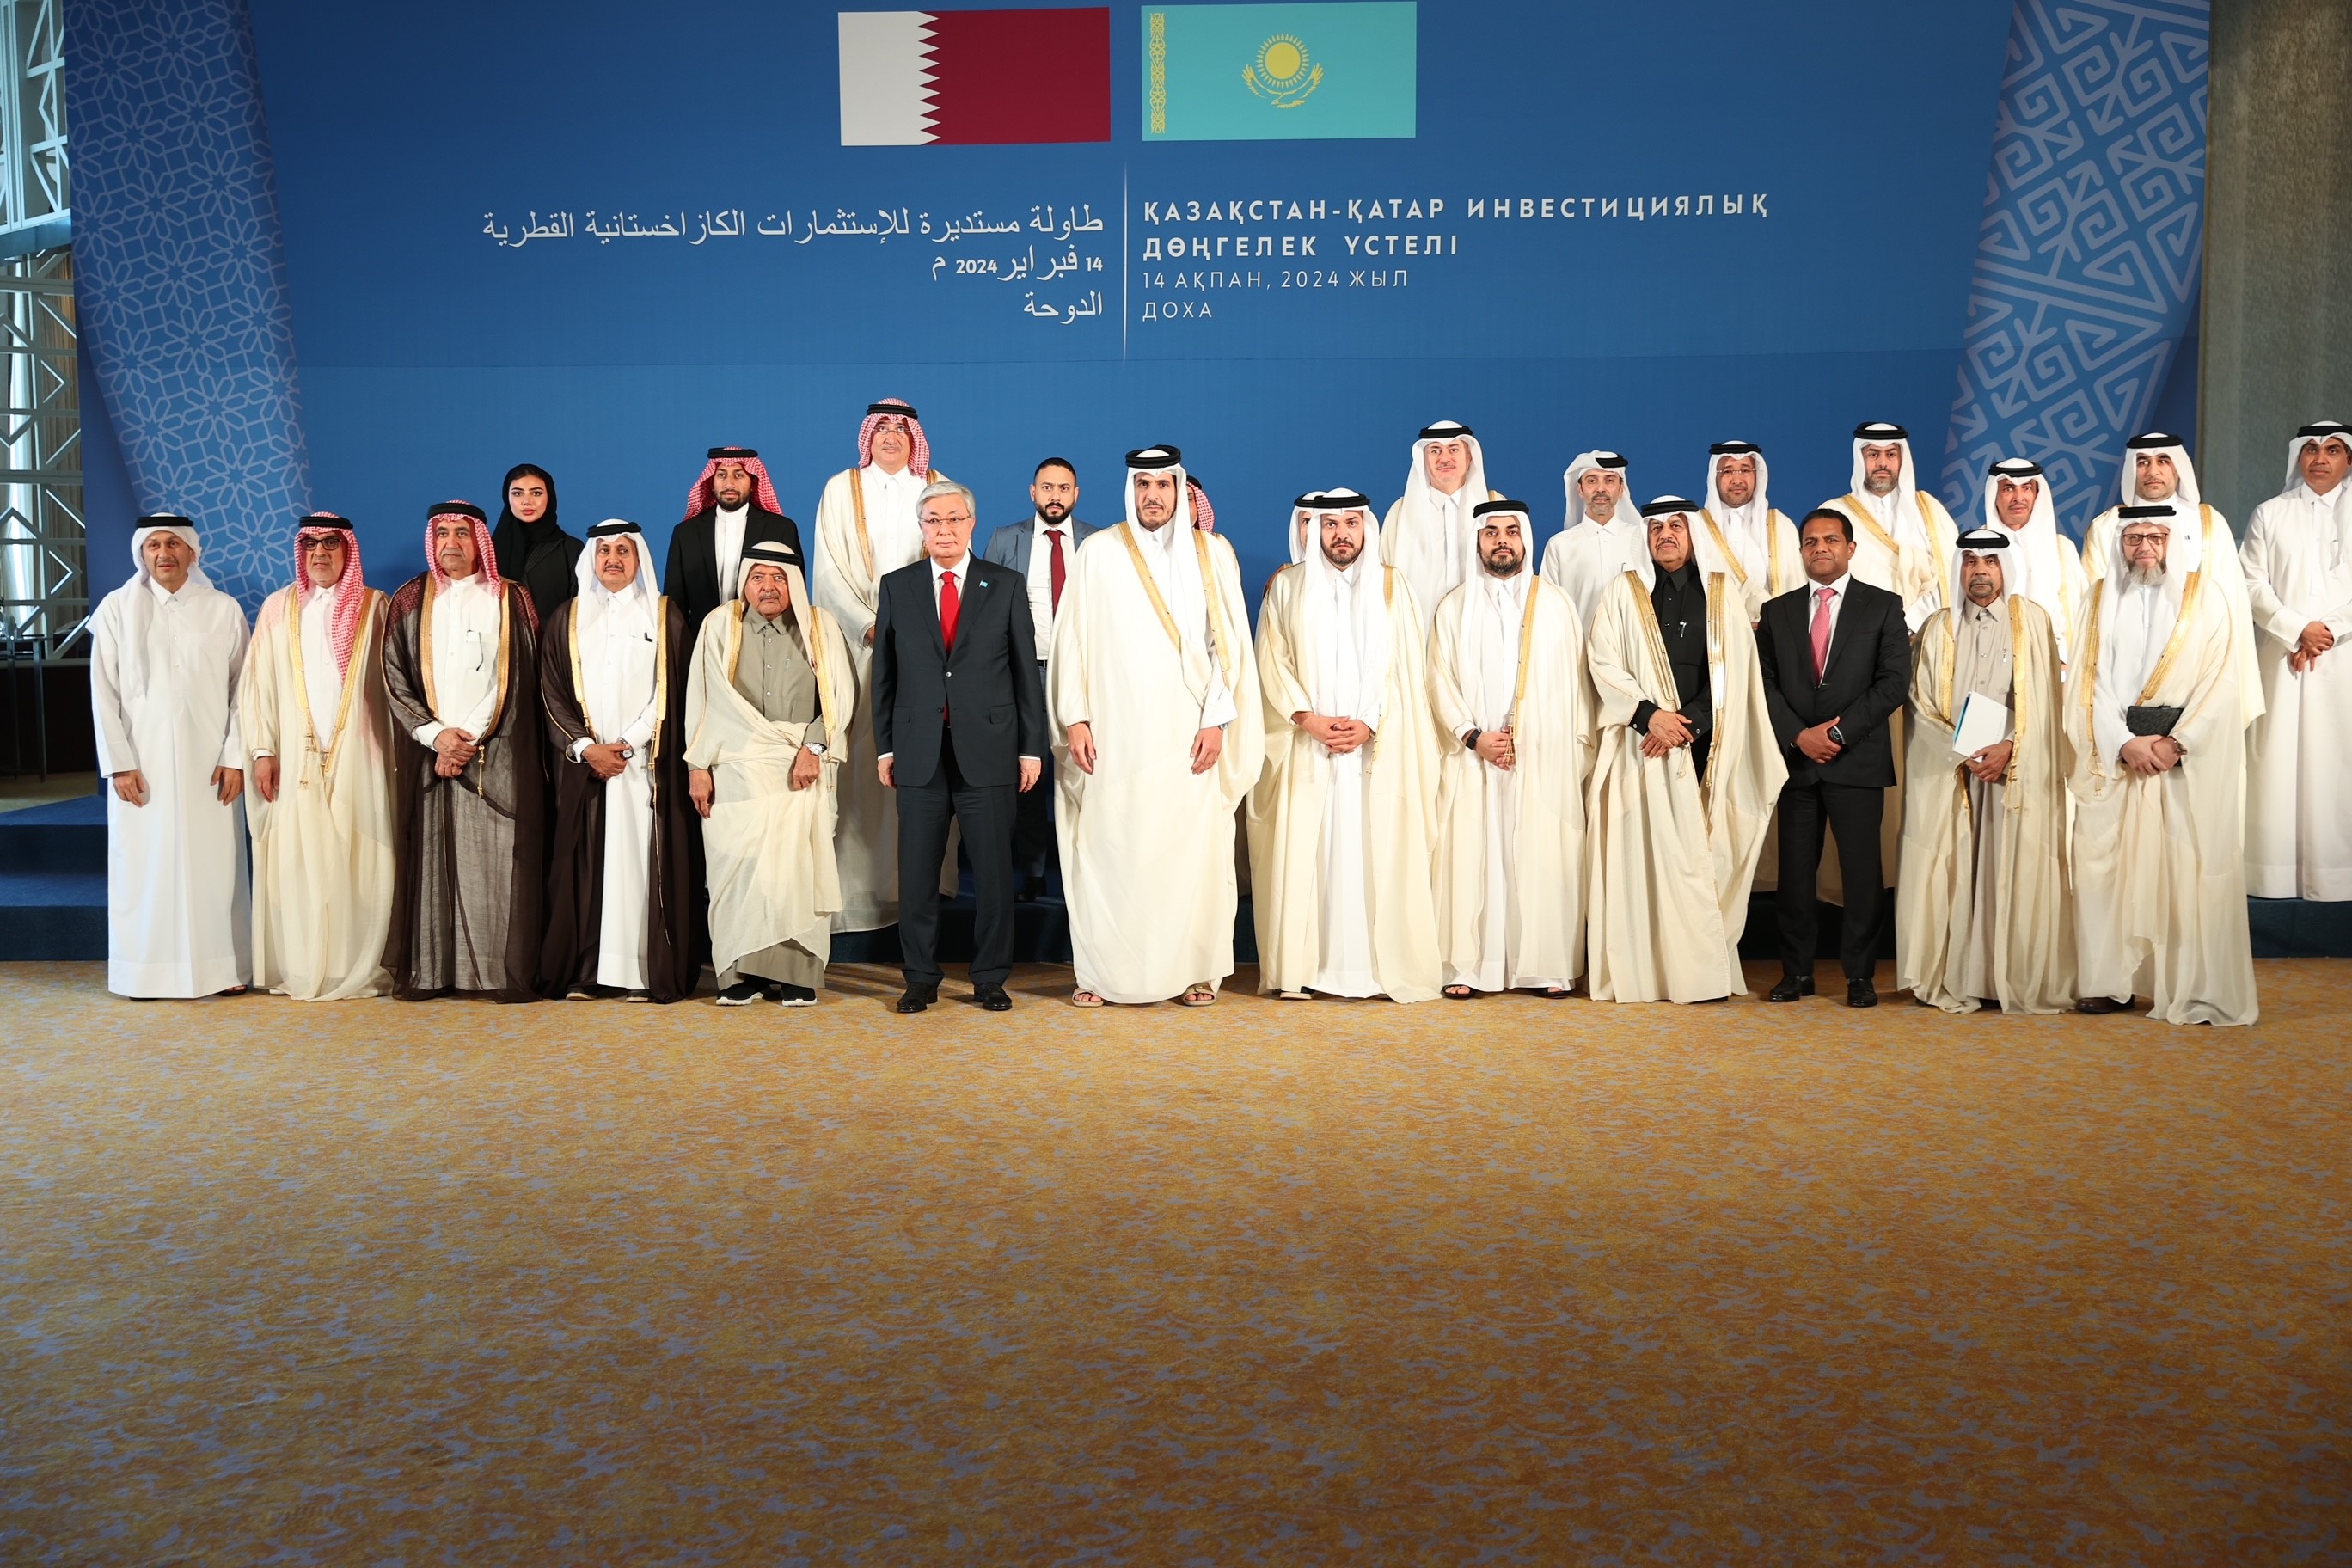 اجتماع أعمال الطاولة المستديرة بين دولة قطر وكازاخستان يبحث تعزيز التعاون في قطاعات التجارة والاستثمار والصناعة 